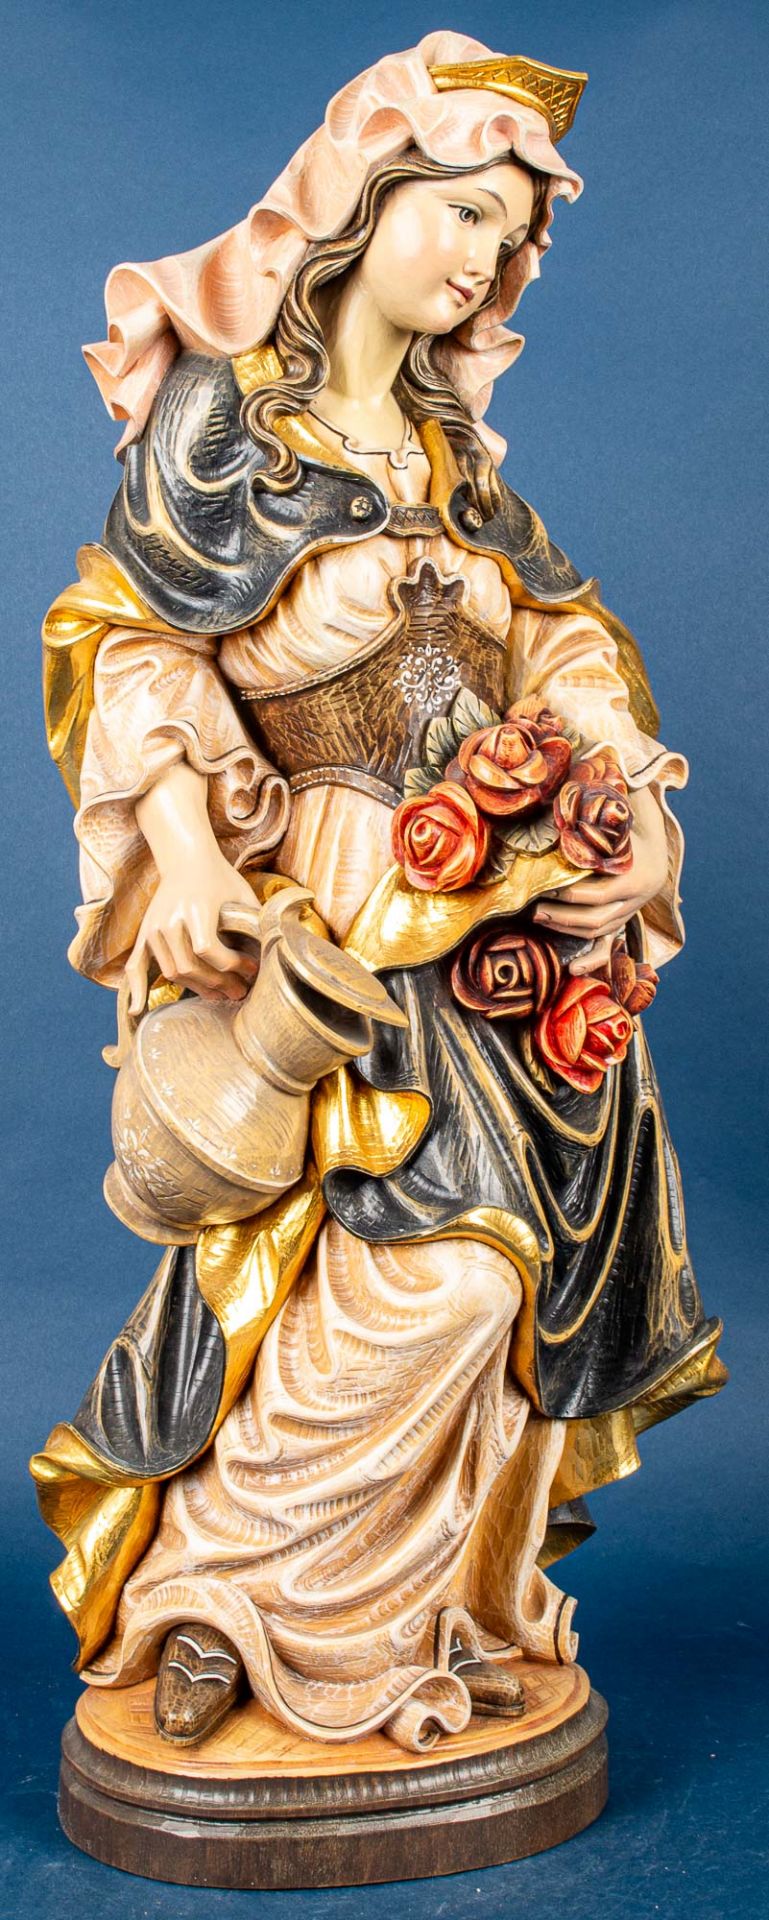 "Junge Frau mit Krug und Rosen", alpenländische Holzschnitzerei, Höhe ca. 80 cm